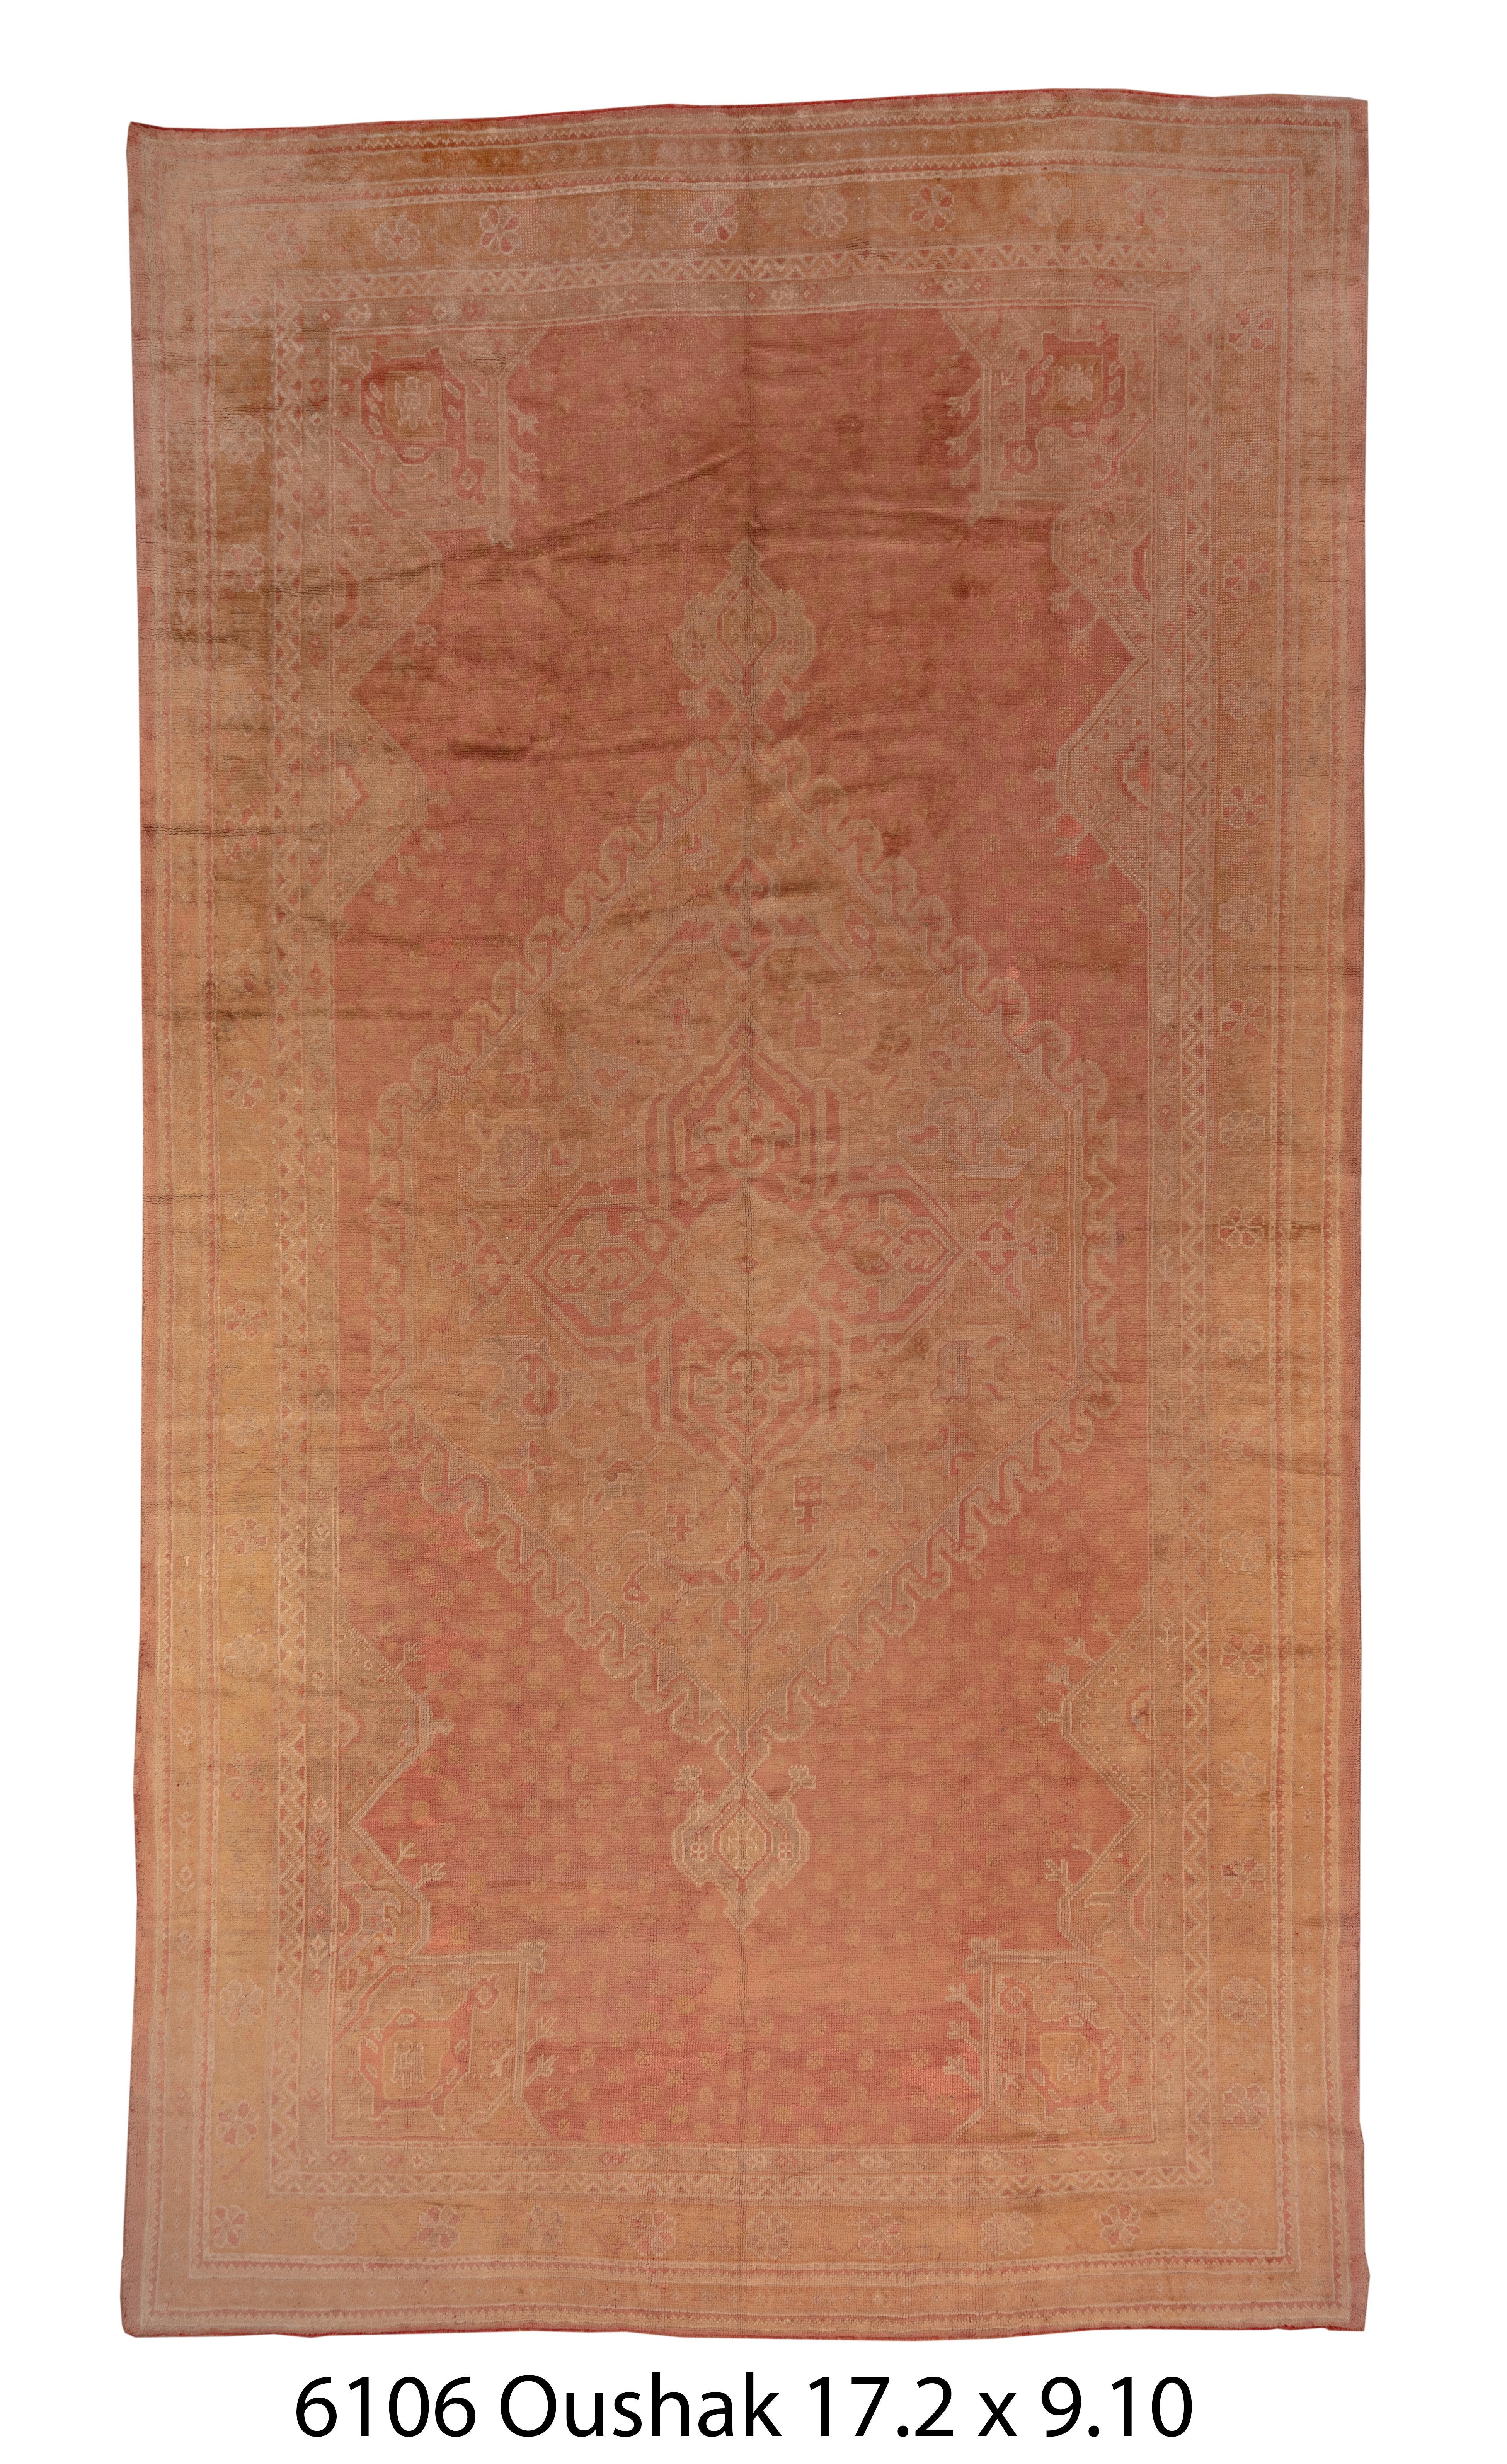 Dieser überwiegend pfirsichfarbene Teppich aus Westanatolien folgt klassischen osmanischen Archetypen mit einem flammenumrandeten Sechseckmedaillon und klobigen Arabeskenecken. Die schmale Hauptbordüre zeigt unzusammenhängende Rosetten.